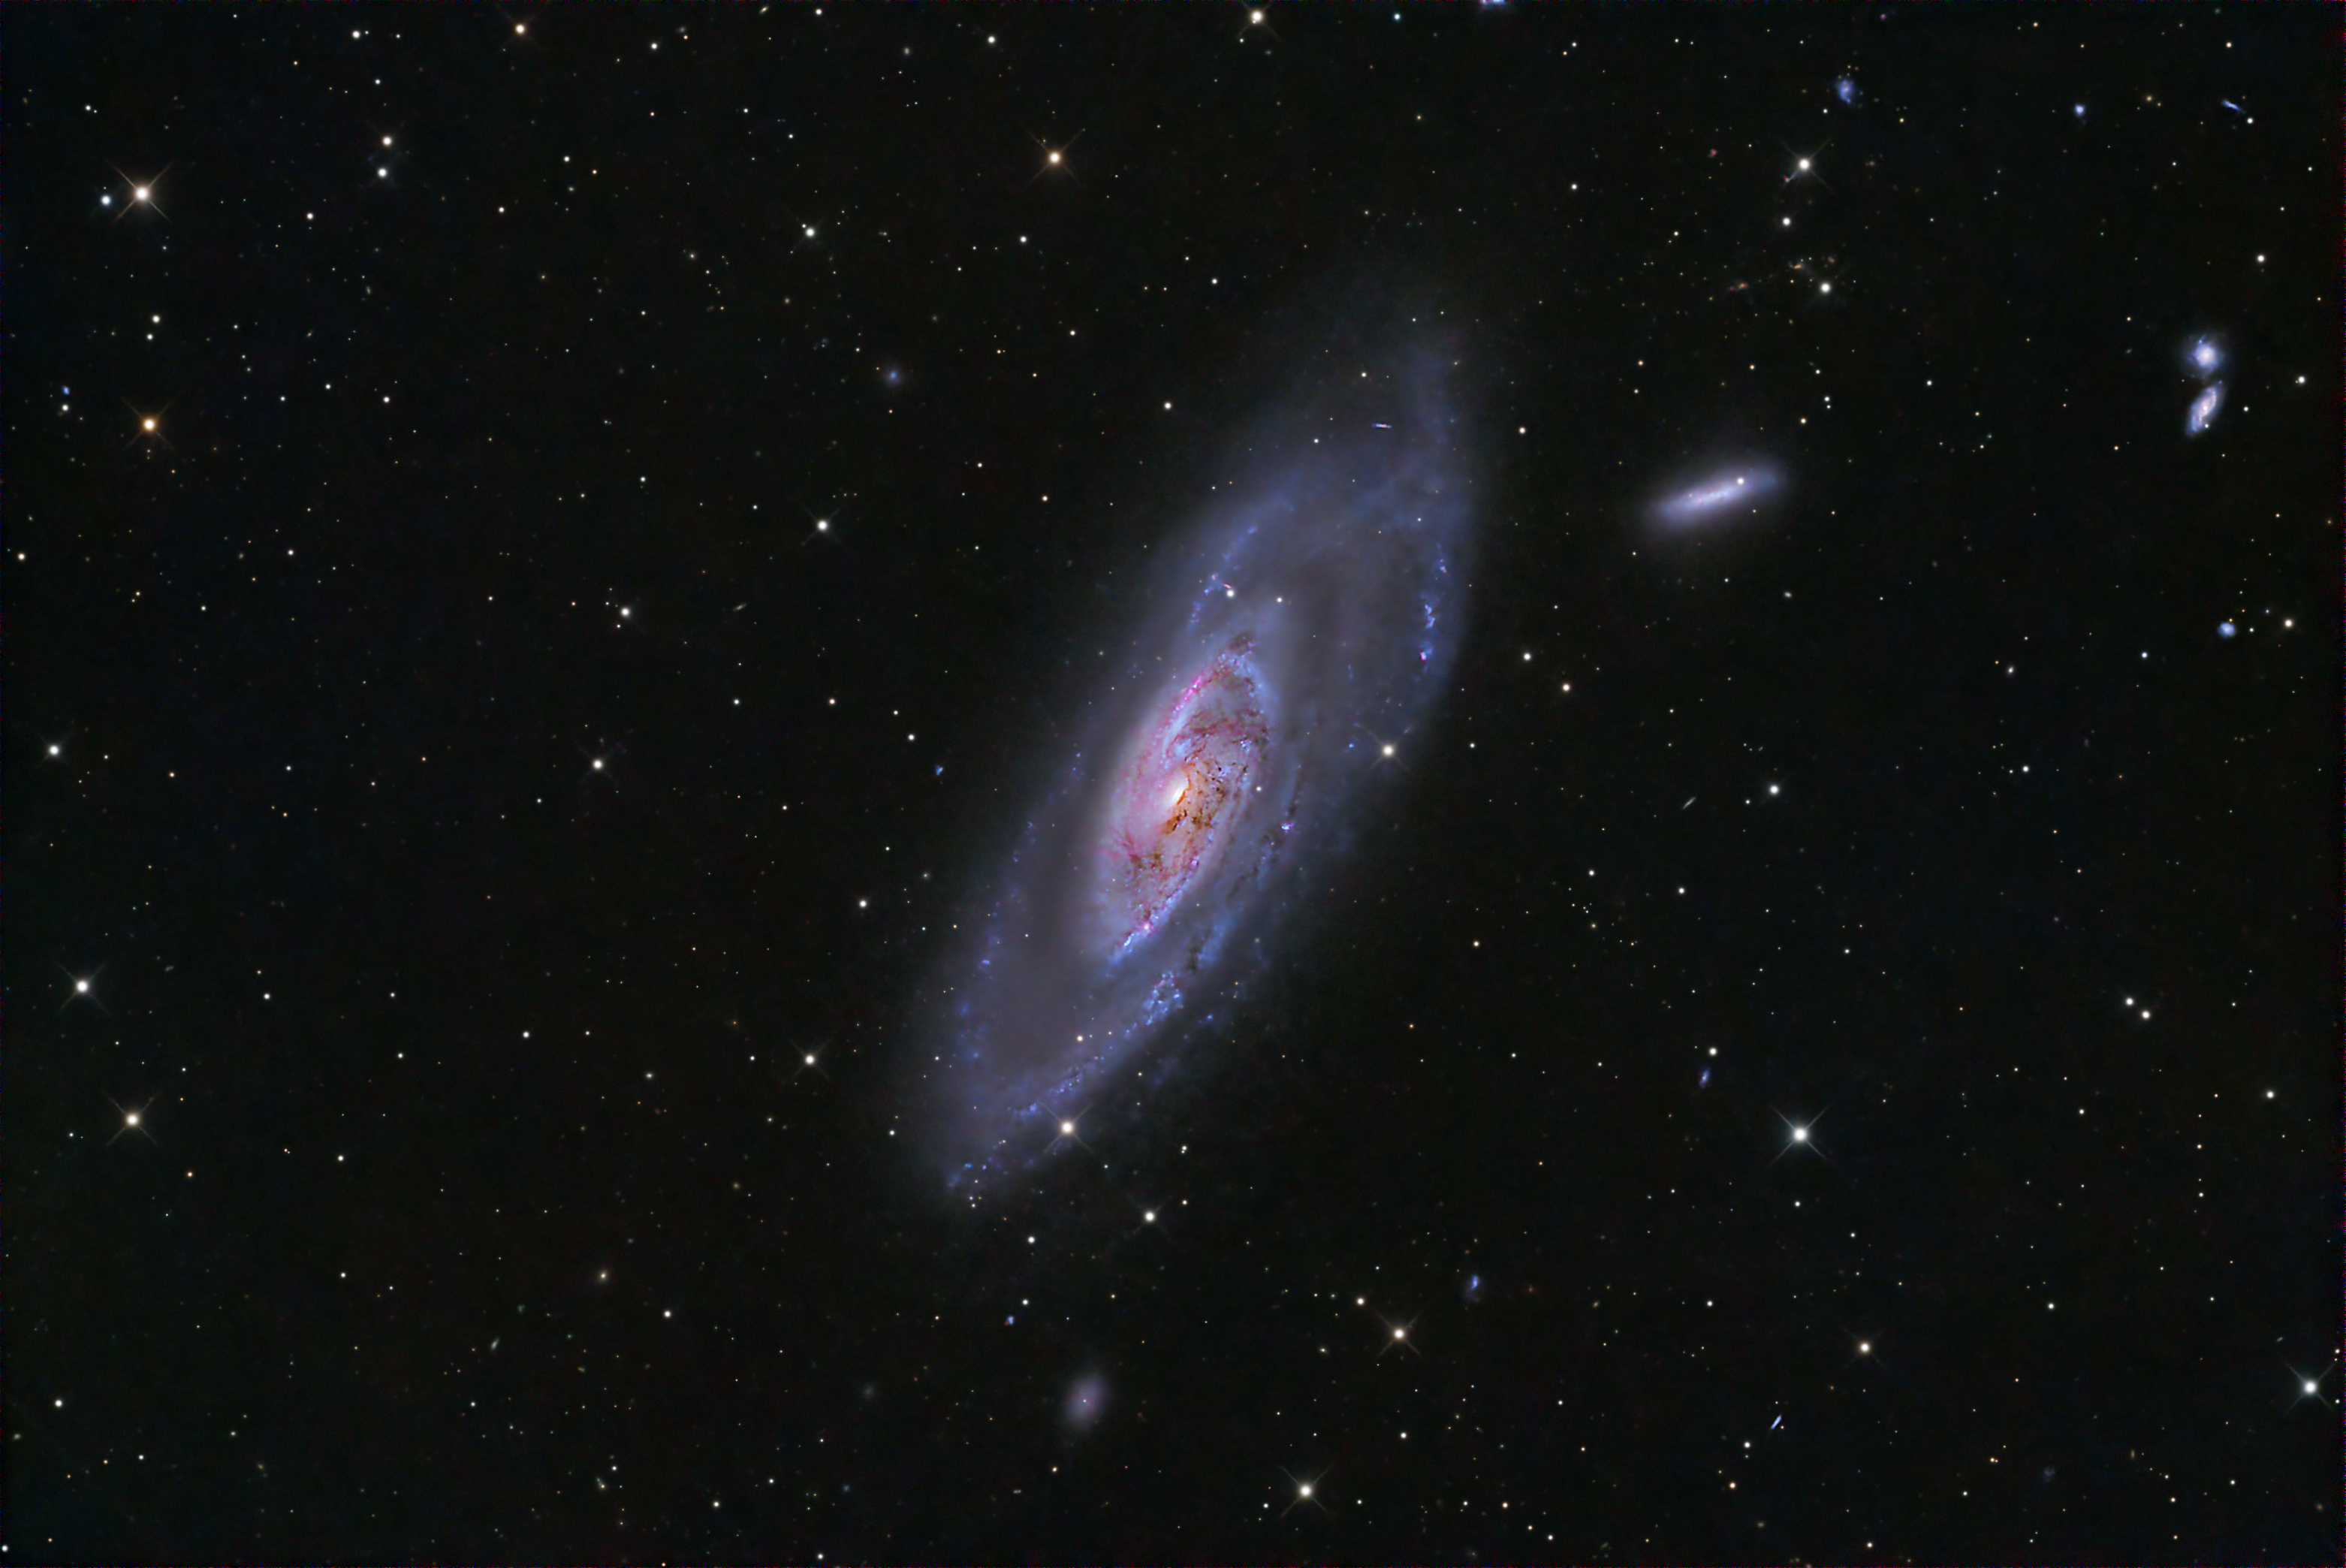 りょうけん座の渦巻銀河 M106